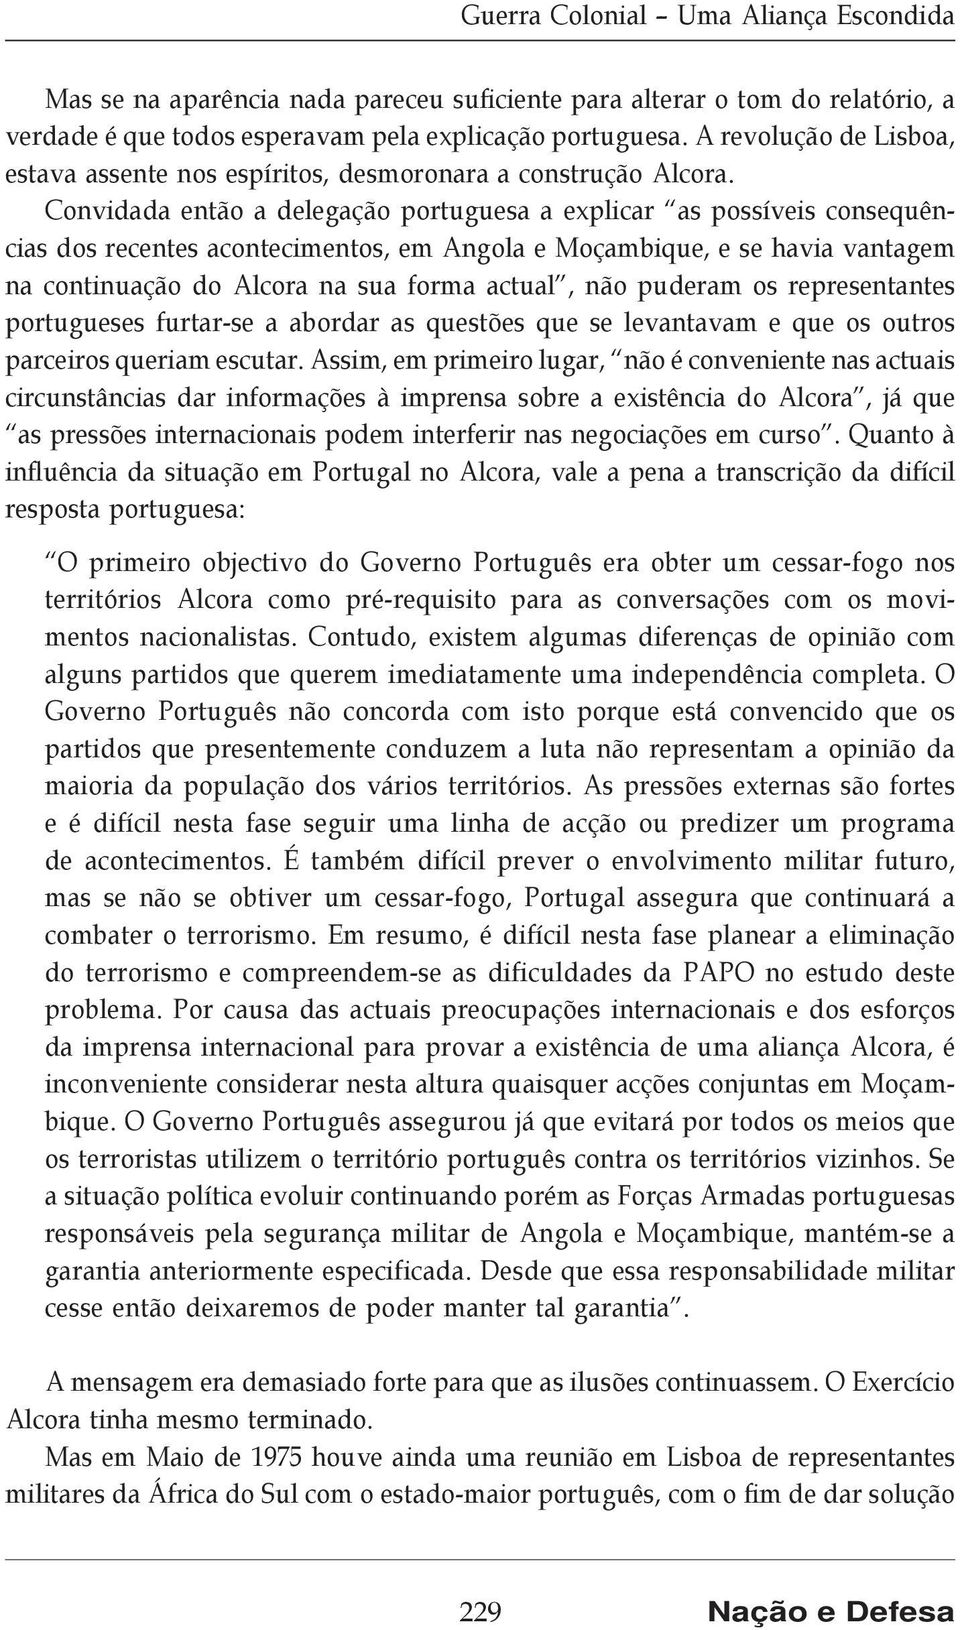 Convidada então a delegação portuguesa a explicar as possíveis consequências dos recentes acontecimentos, em Angola e Moçambique, e se havia vantagem na continuação do Alcora na sua forma actual, não